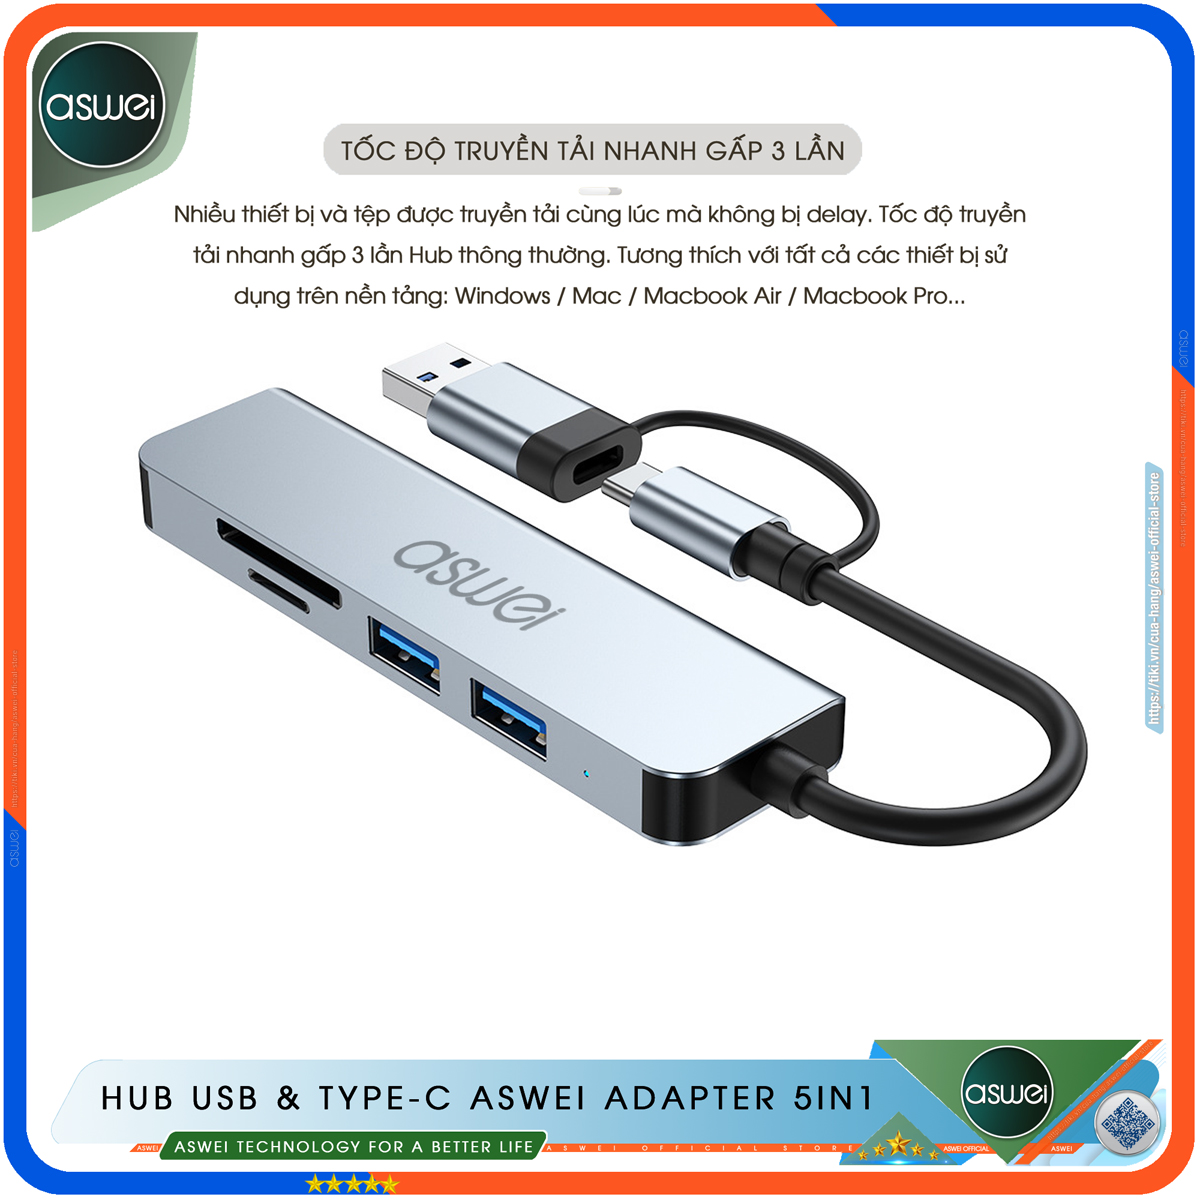 Hub Type C Và Hub USB 3.0 ASWEI Adapter 5in1 - Cổng Chia USB Mở Rộng Kết Nối Tốc Độ Cao Dành Cho Macbook, Laptop, PC - Hub Chuyển Đổi USB Type-C Hỗ Trợ Sạc Pin, Kết Nối Đa Năng ổ Cứng, Bàn Phím, Chuột, Máy In, Ổ Chia USB - Hàng Chính Hãng